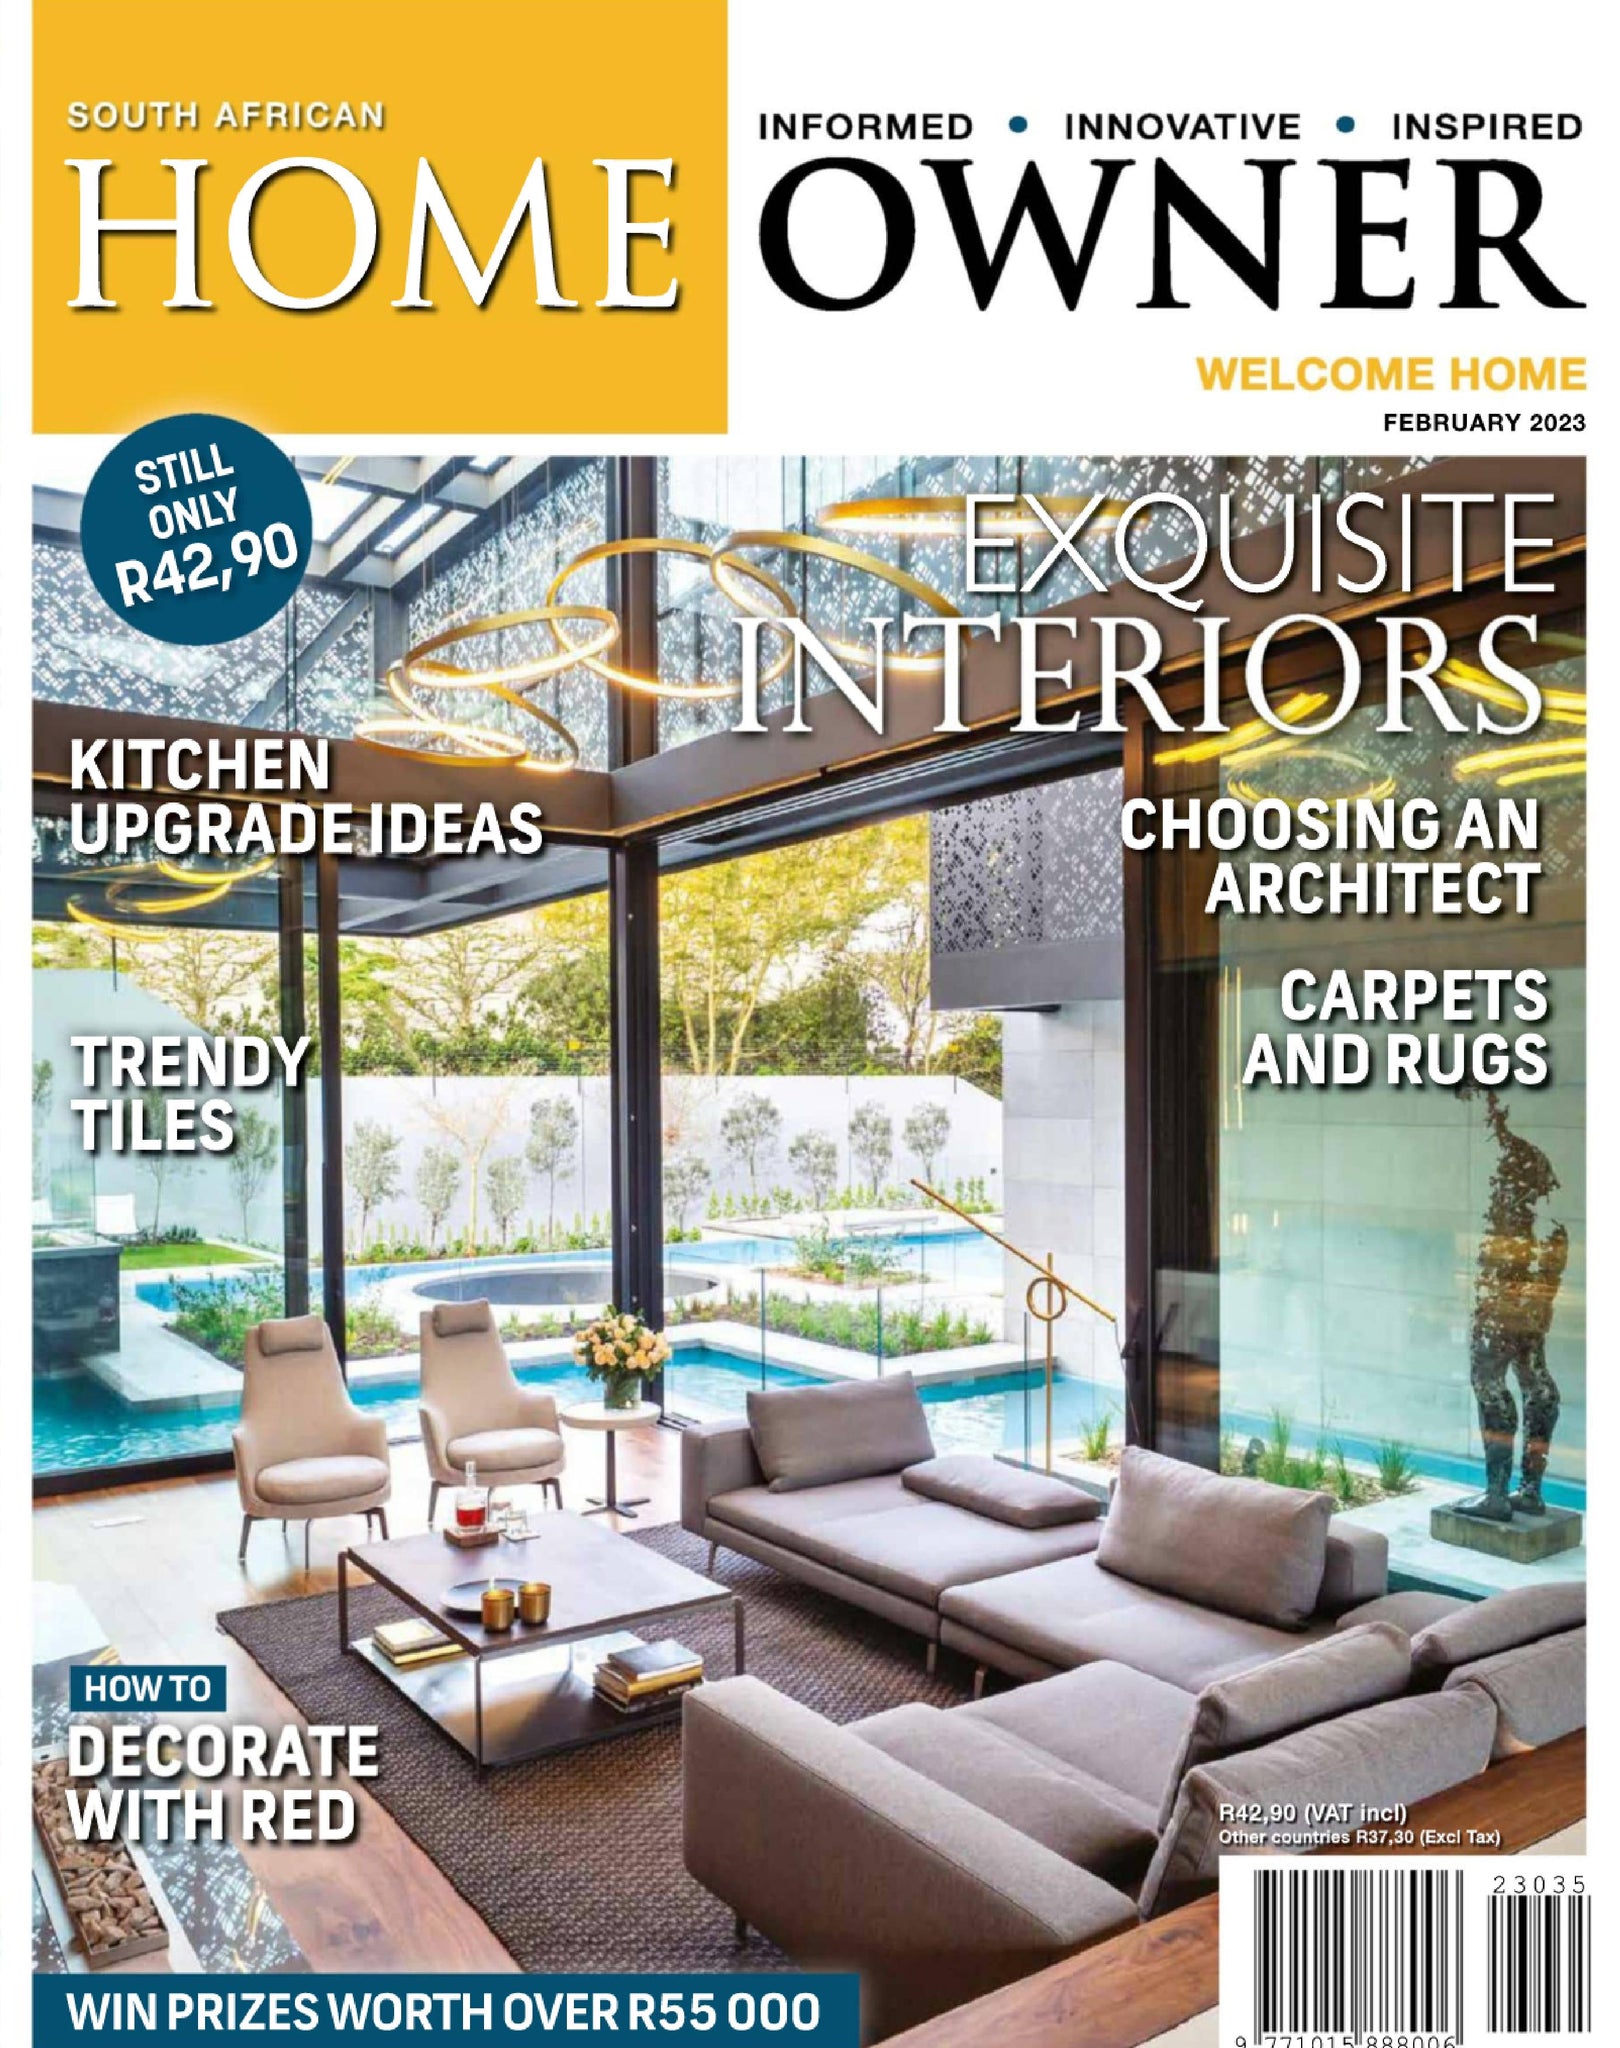 SA Home Owner February '23 | The Home Quarter